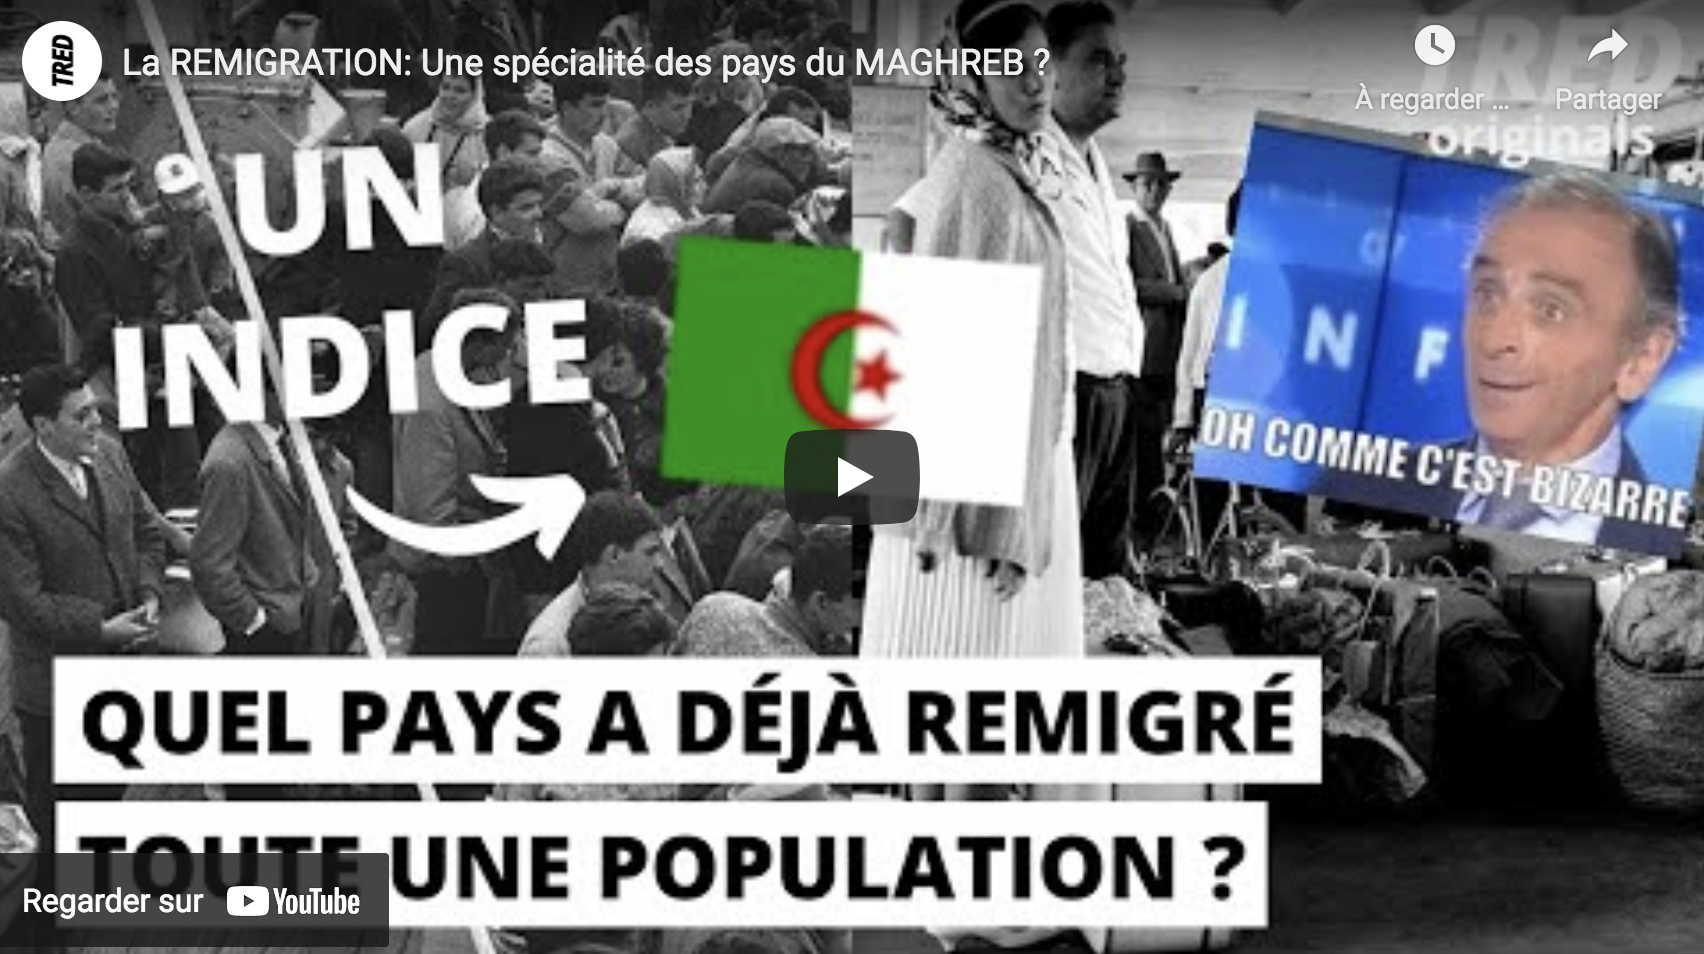 La remigration : Une spécialité des pays du Maghreb ?